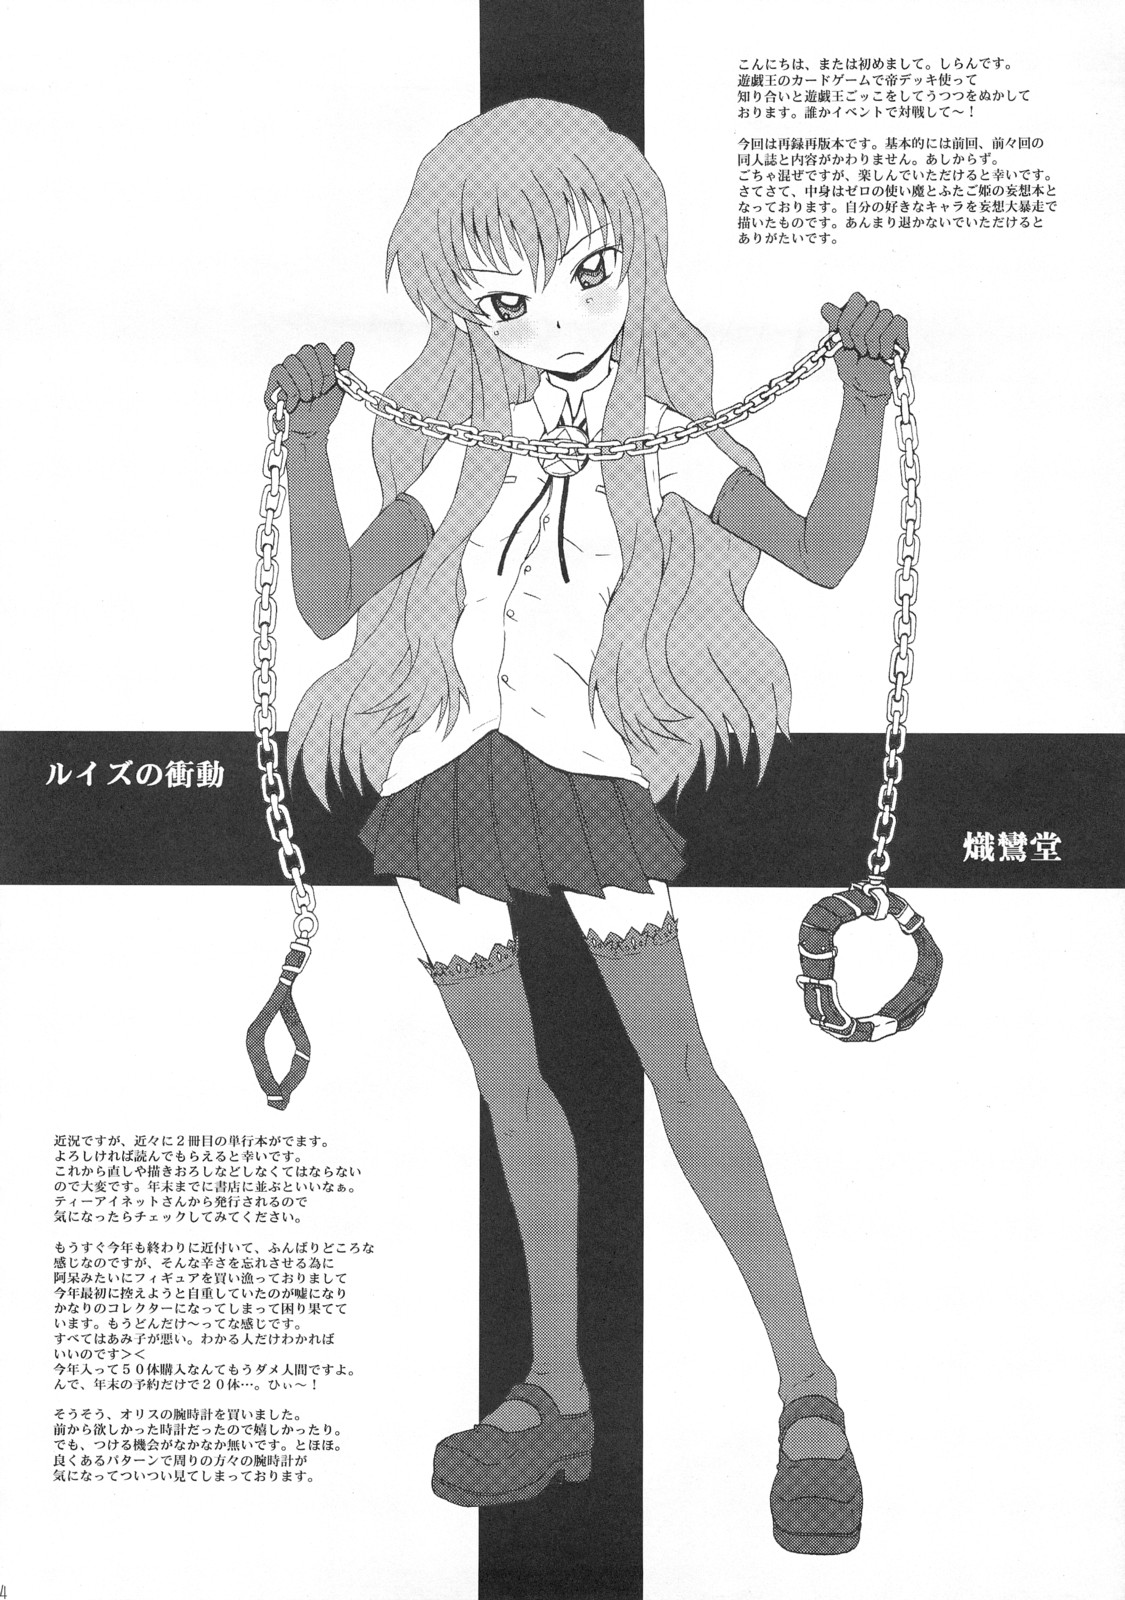 [Shirandou] Louise no Shoudou (Zero no Tsukaima / The Familiar of Zero) page 3 full